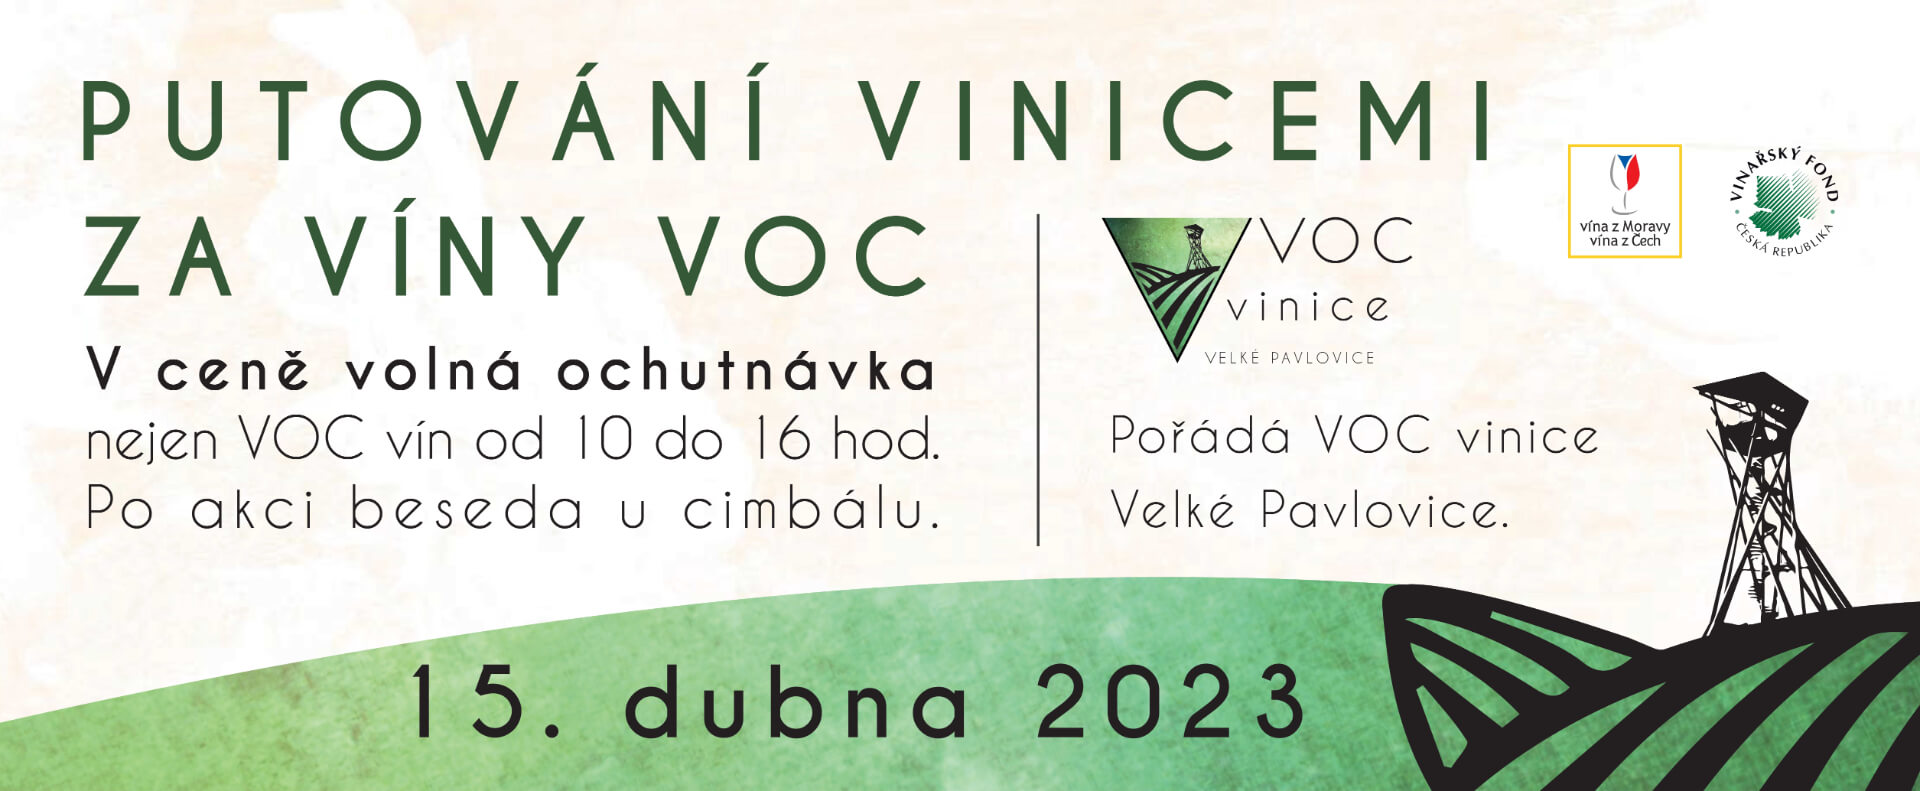 Putování vinicemi za víny VOC ve Velkých Pavlovicích 2023.